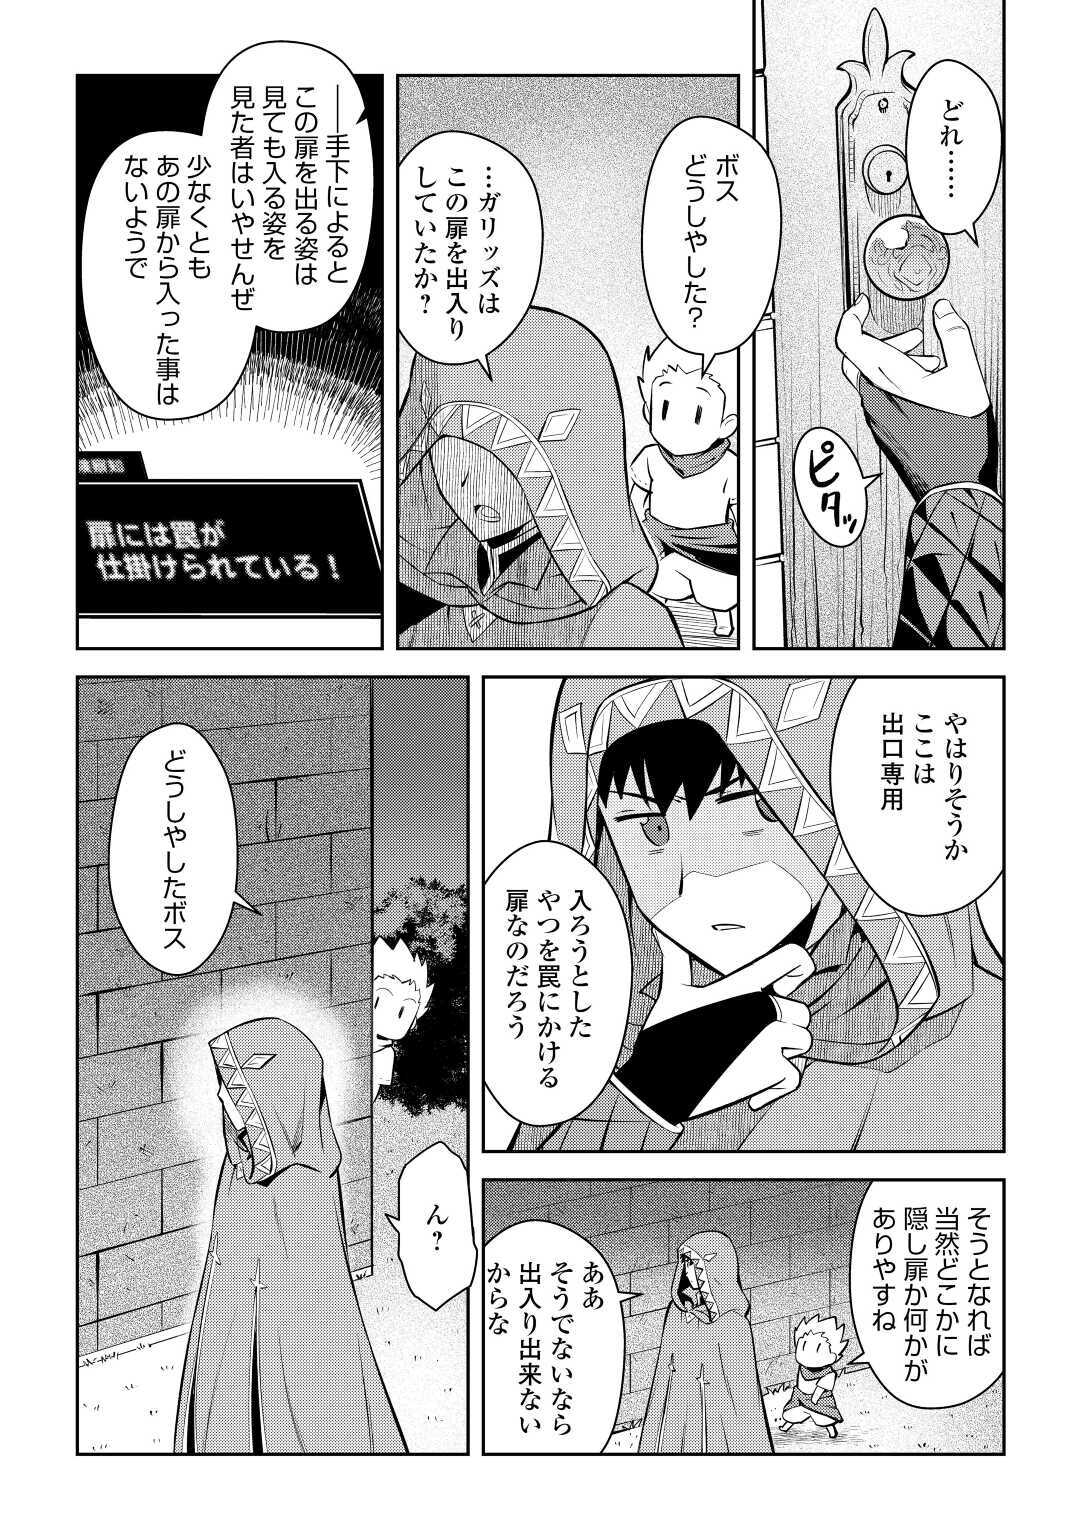 Toaru Ossan no VRMMO Katsudouki - Chapter 69 - Page 2